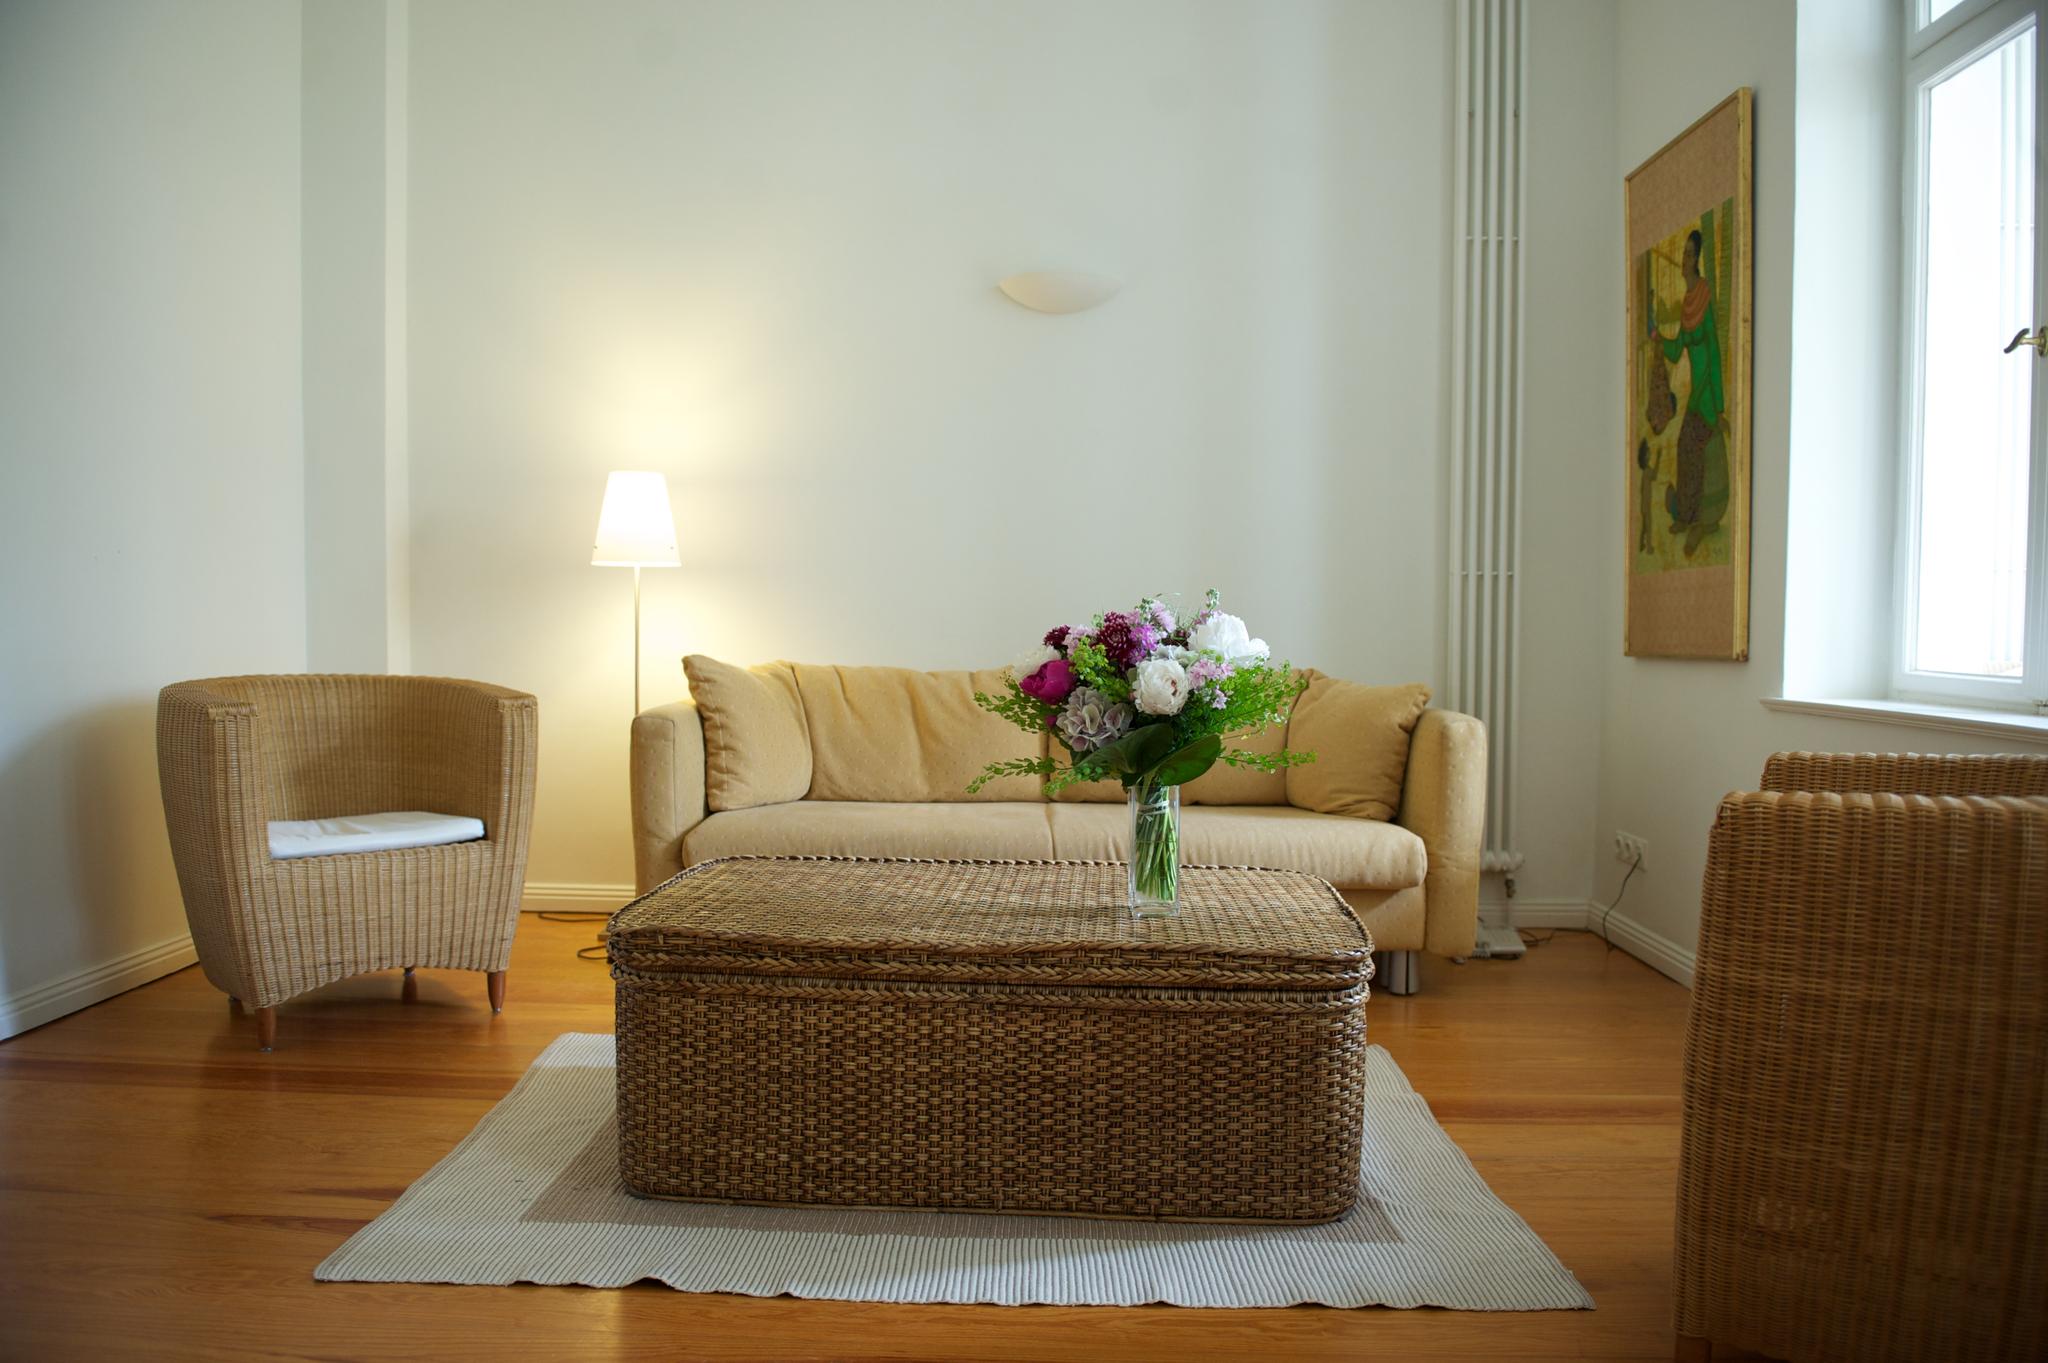 Wohnzimmer mit Holzfußboden und einer senfgelben Sitzecke